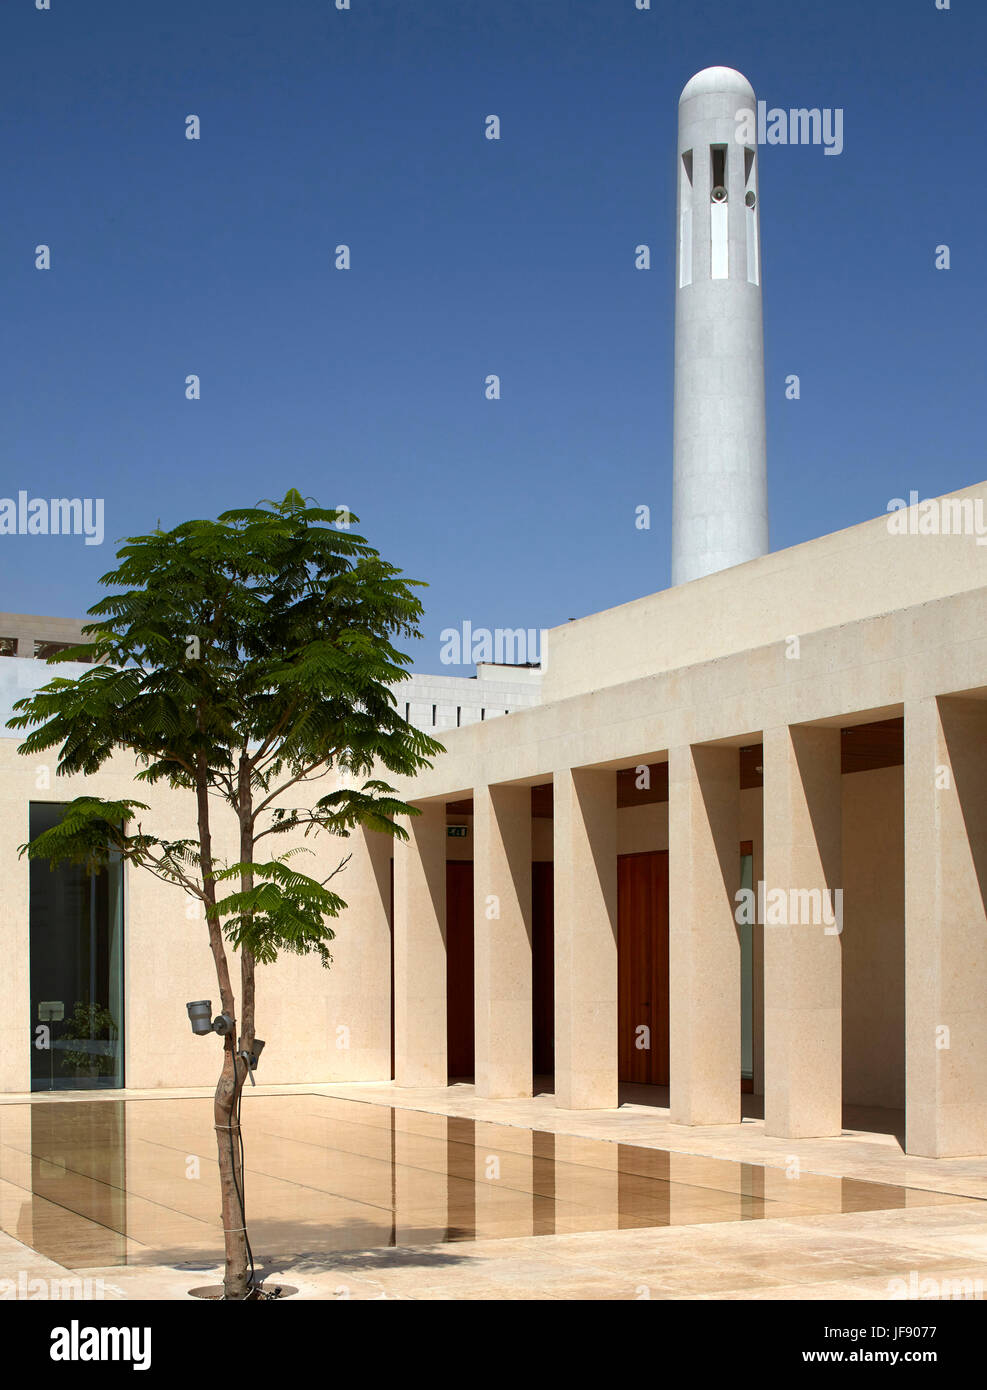 Blick auf Innenhof mit Moschee Minarett im Hintergrund. Mohammed Bin Jassim Haus, Doha, Katar. Architekt: John McAslan & Partner, 2017. Stockfoto